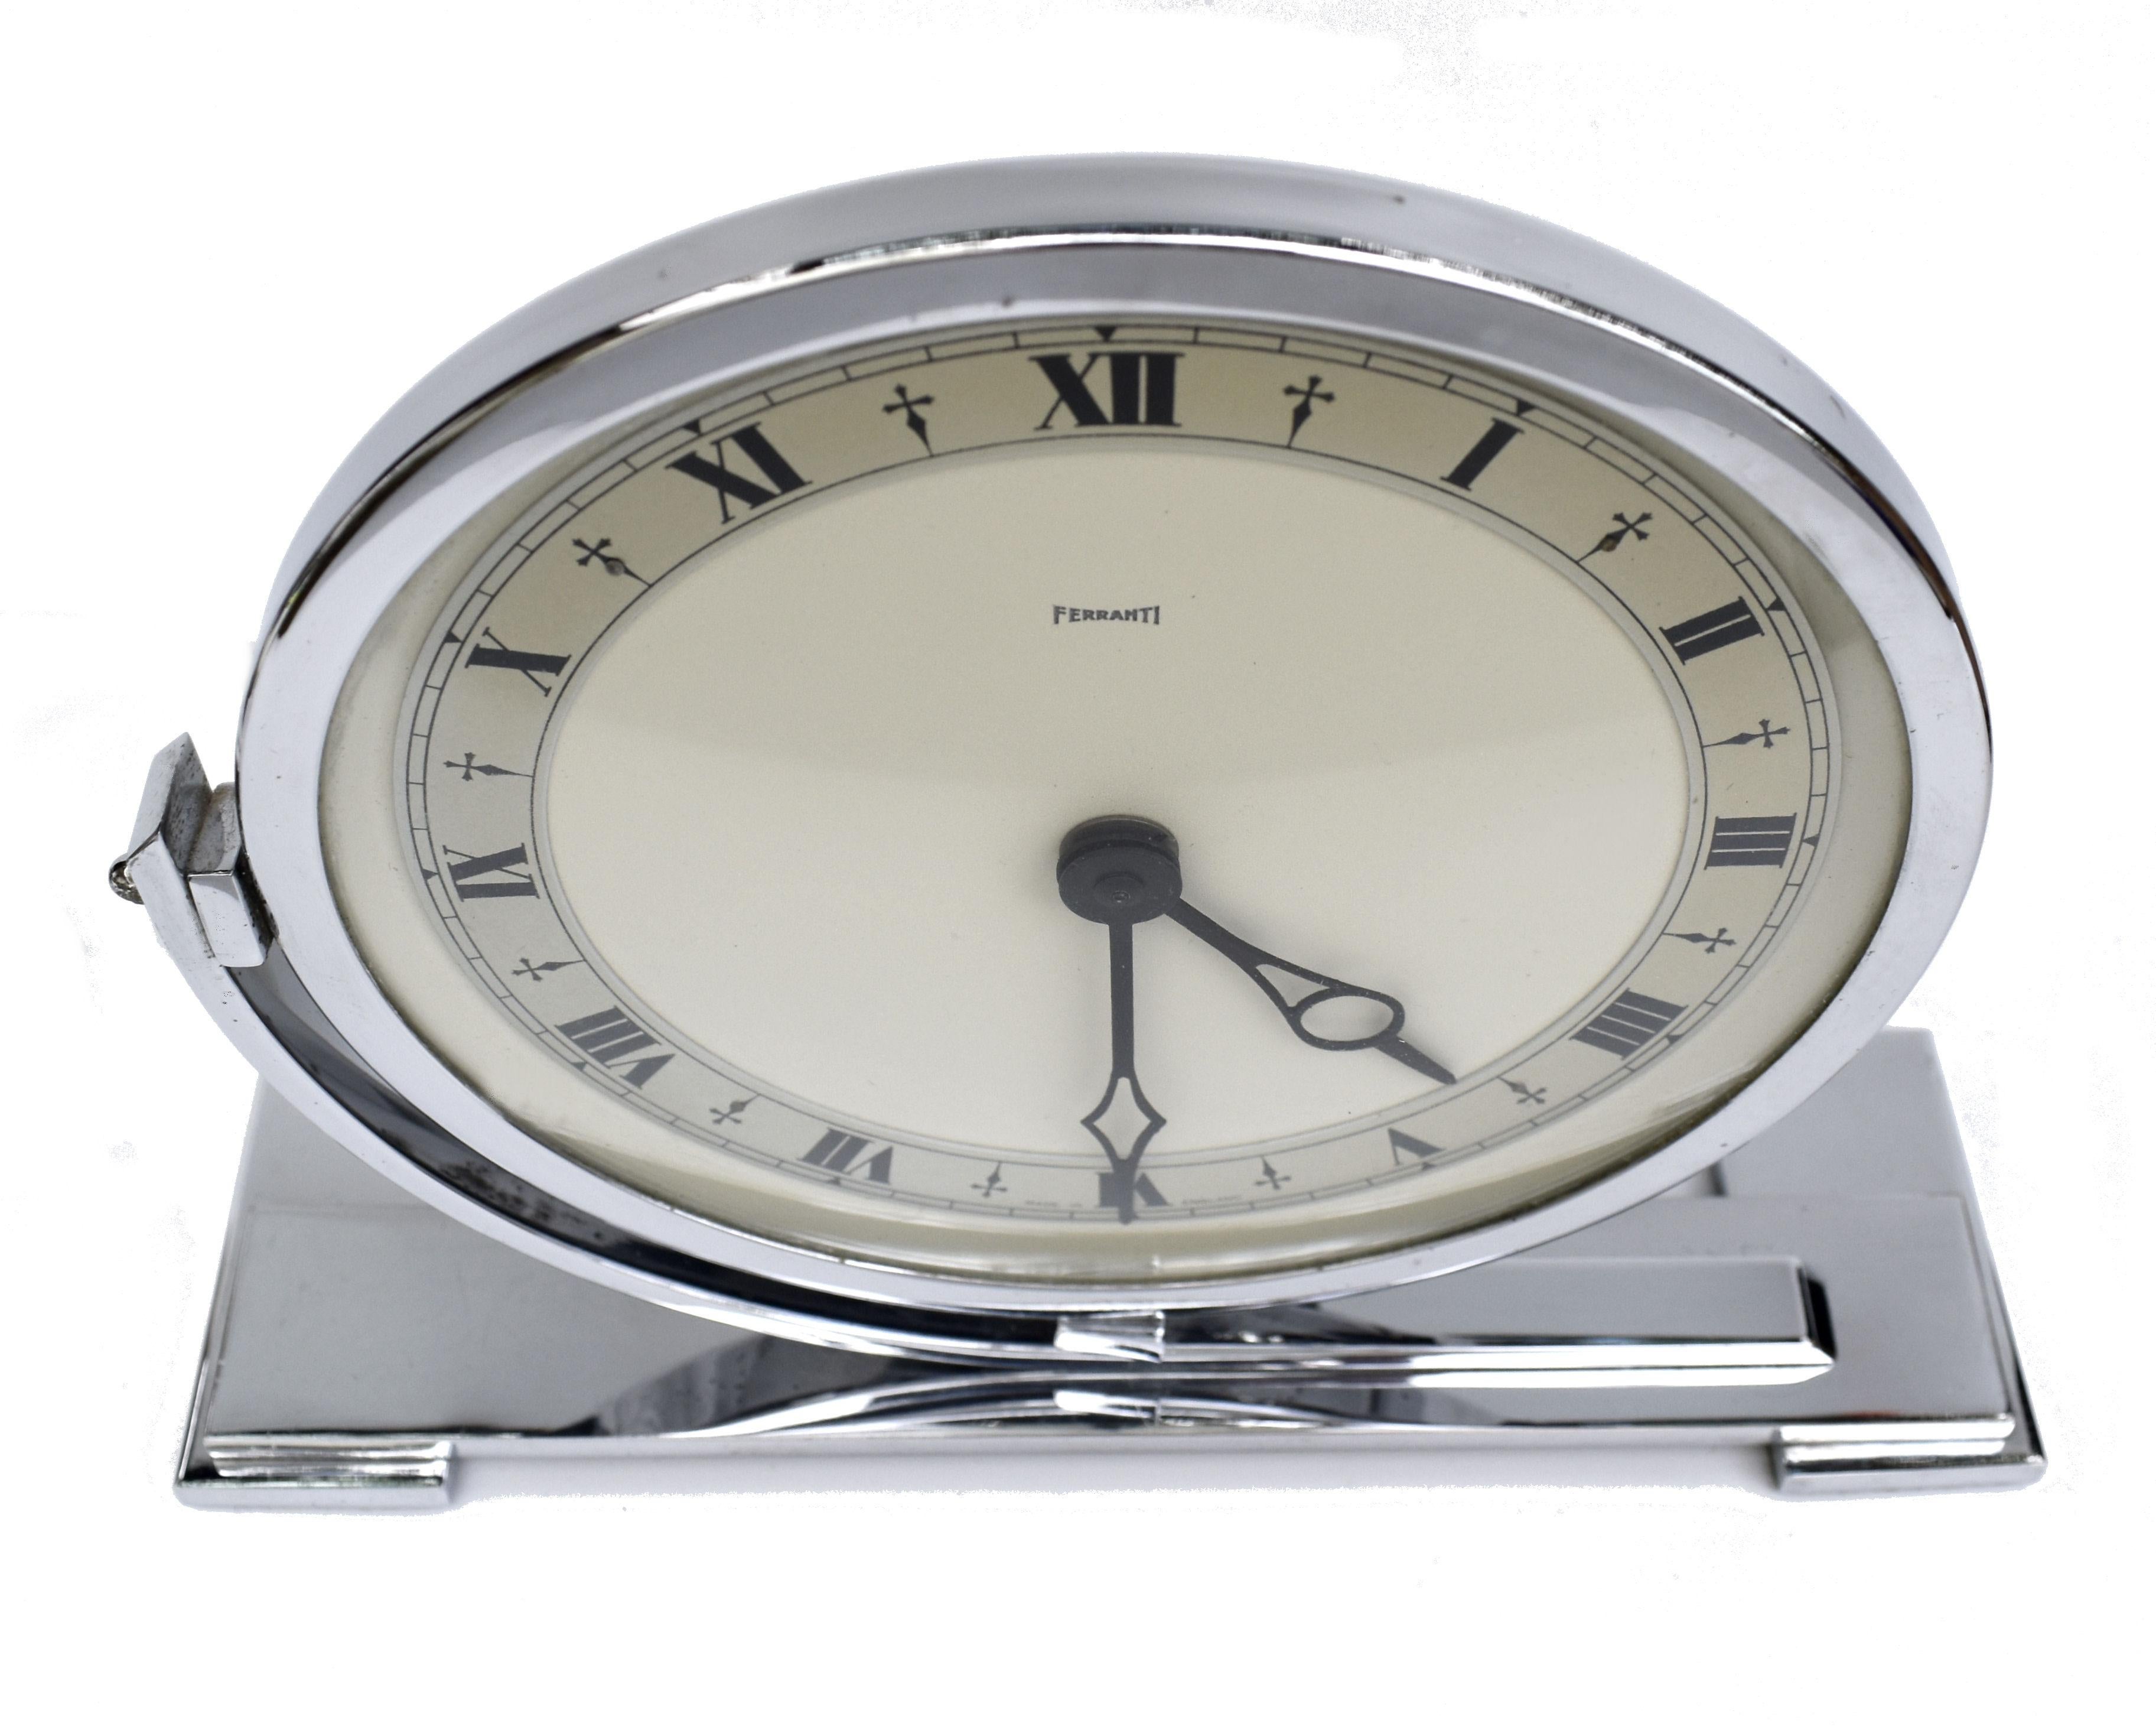 Grande horloge de cheminée chromée très élégante, fabriquée par les horlogers anglais Ferranti. Datant des années 1930, cette horloge électrique est un véritable bijou et se trouve dans un état remarquable, le chrome étant presque parfait. De grande